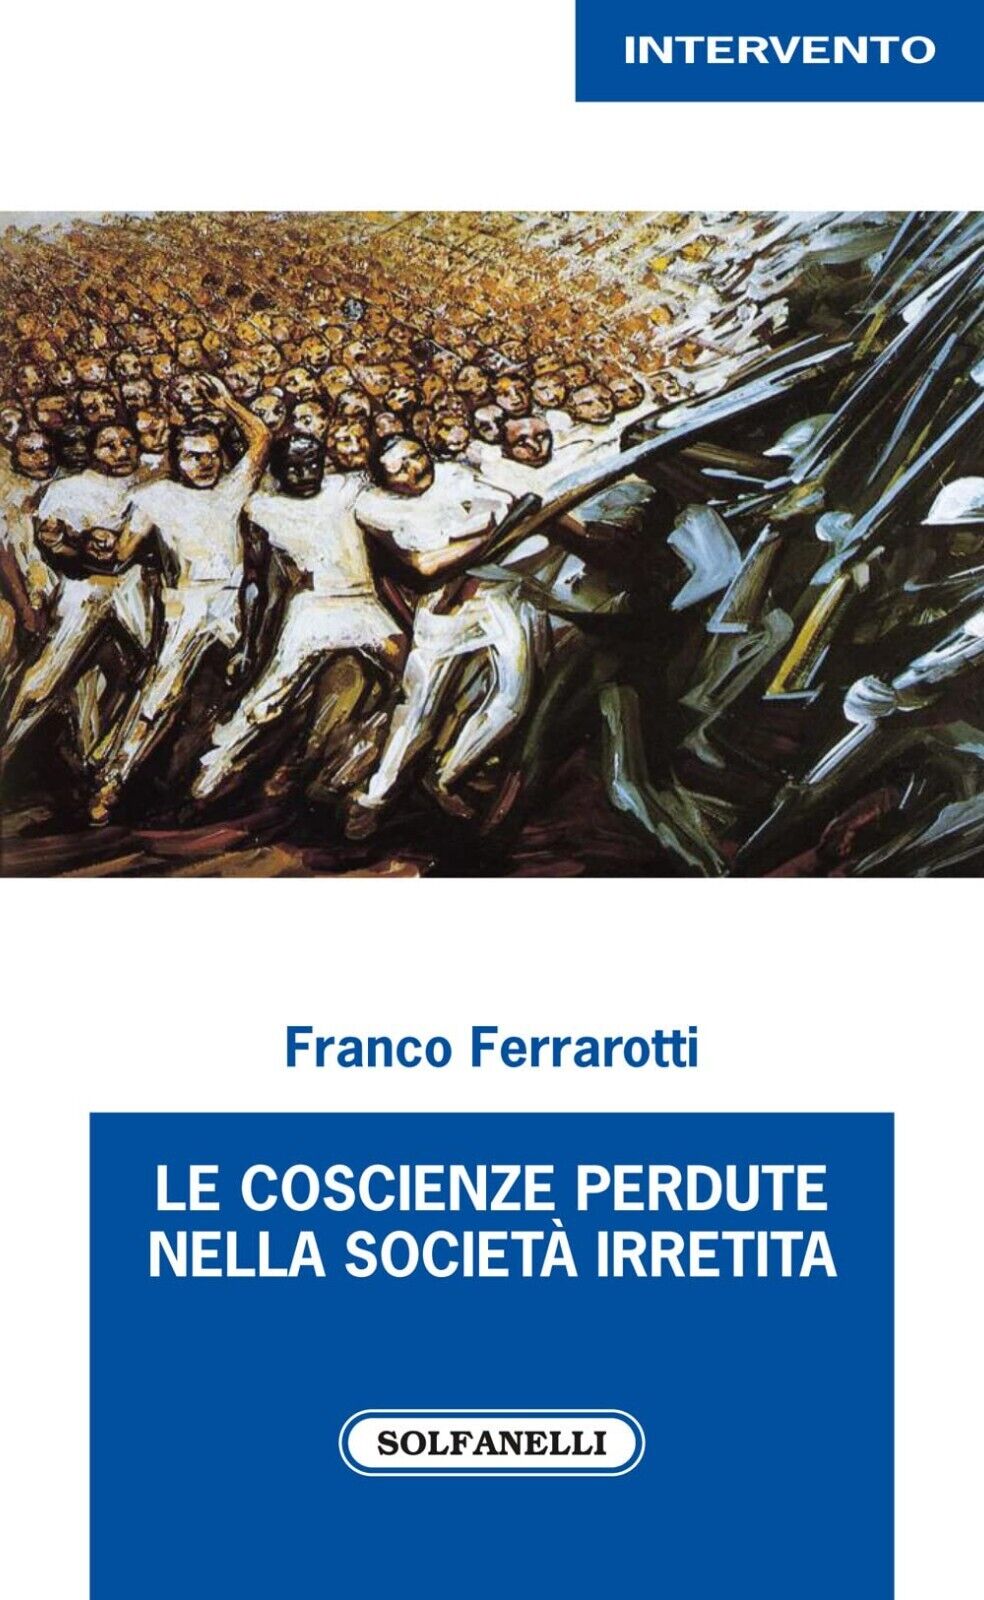  Le coscienze perdute nella societ? irretita di Franco Ferrarotti, 2022, Solf